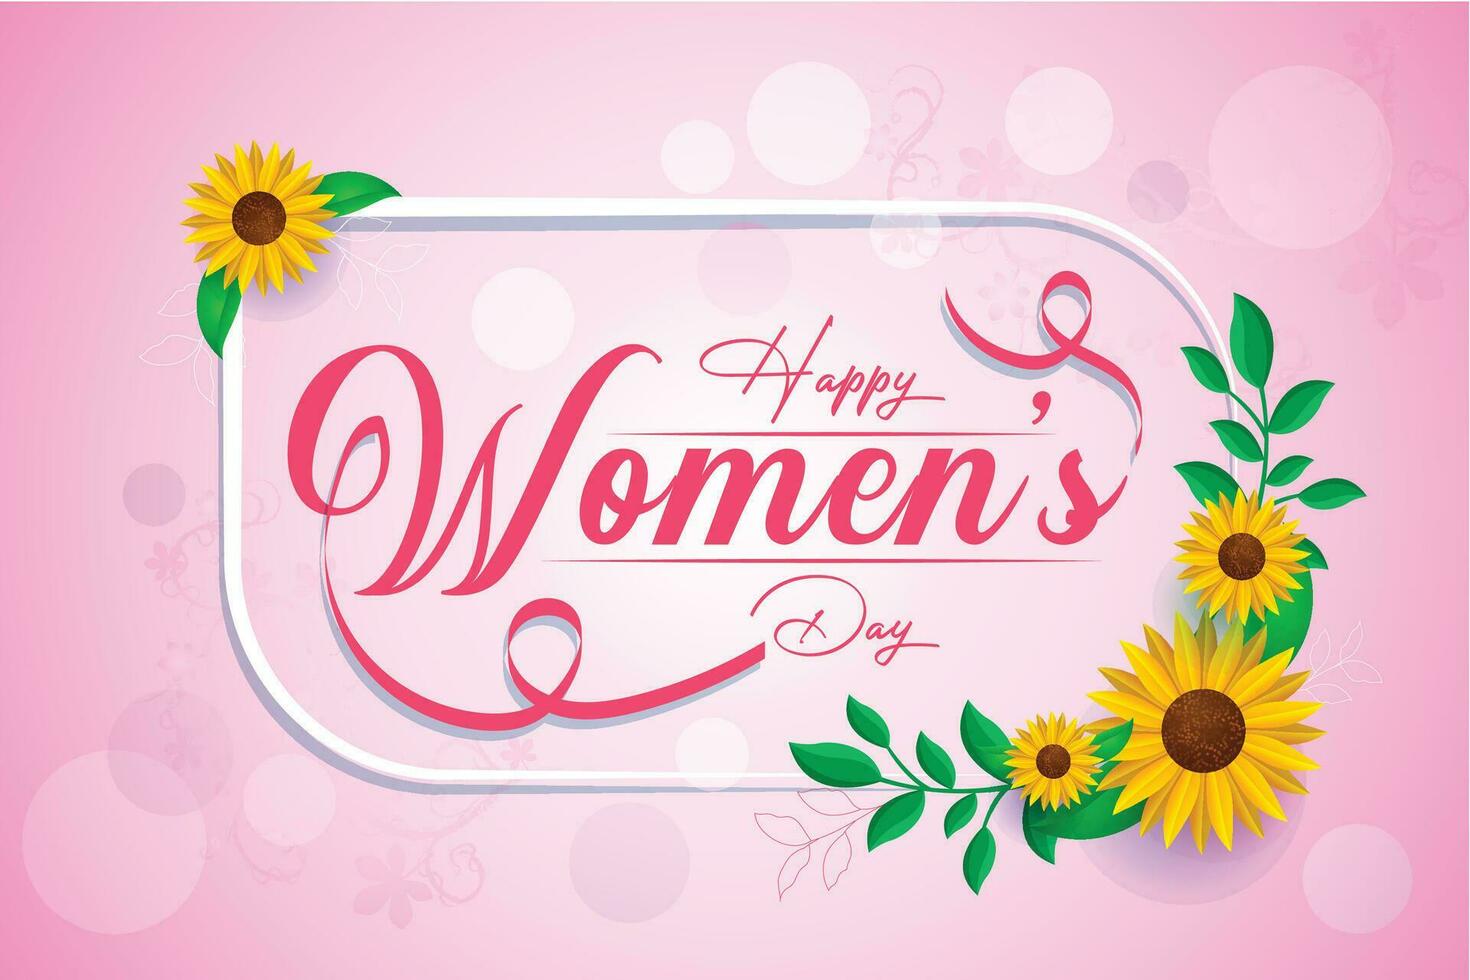 vektor internationell kvinnors dag 8 Mars med gul blomma och blad